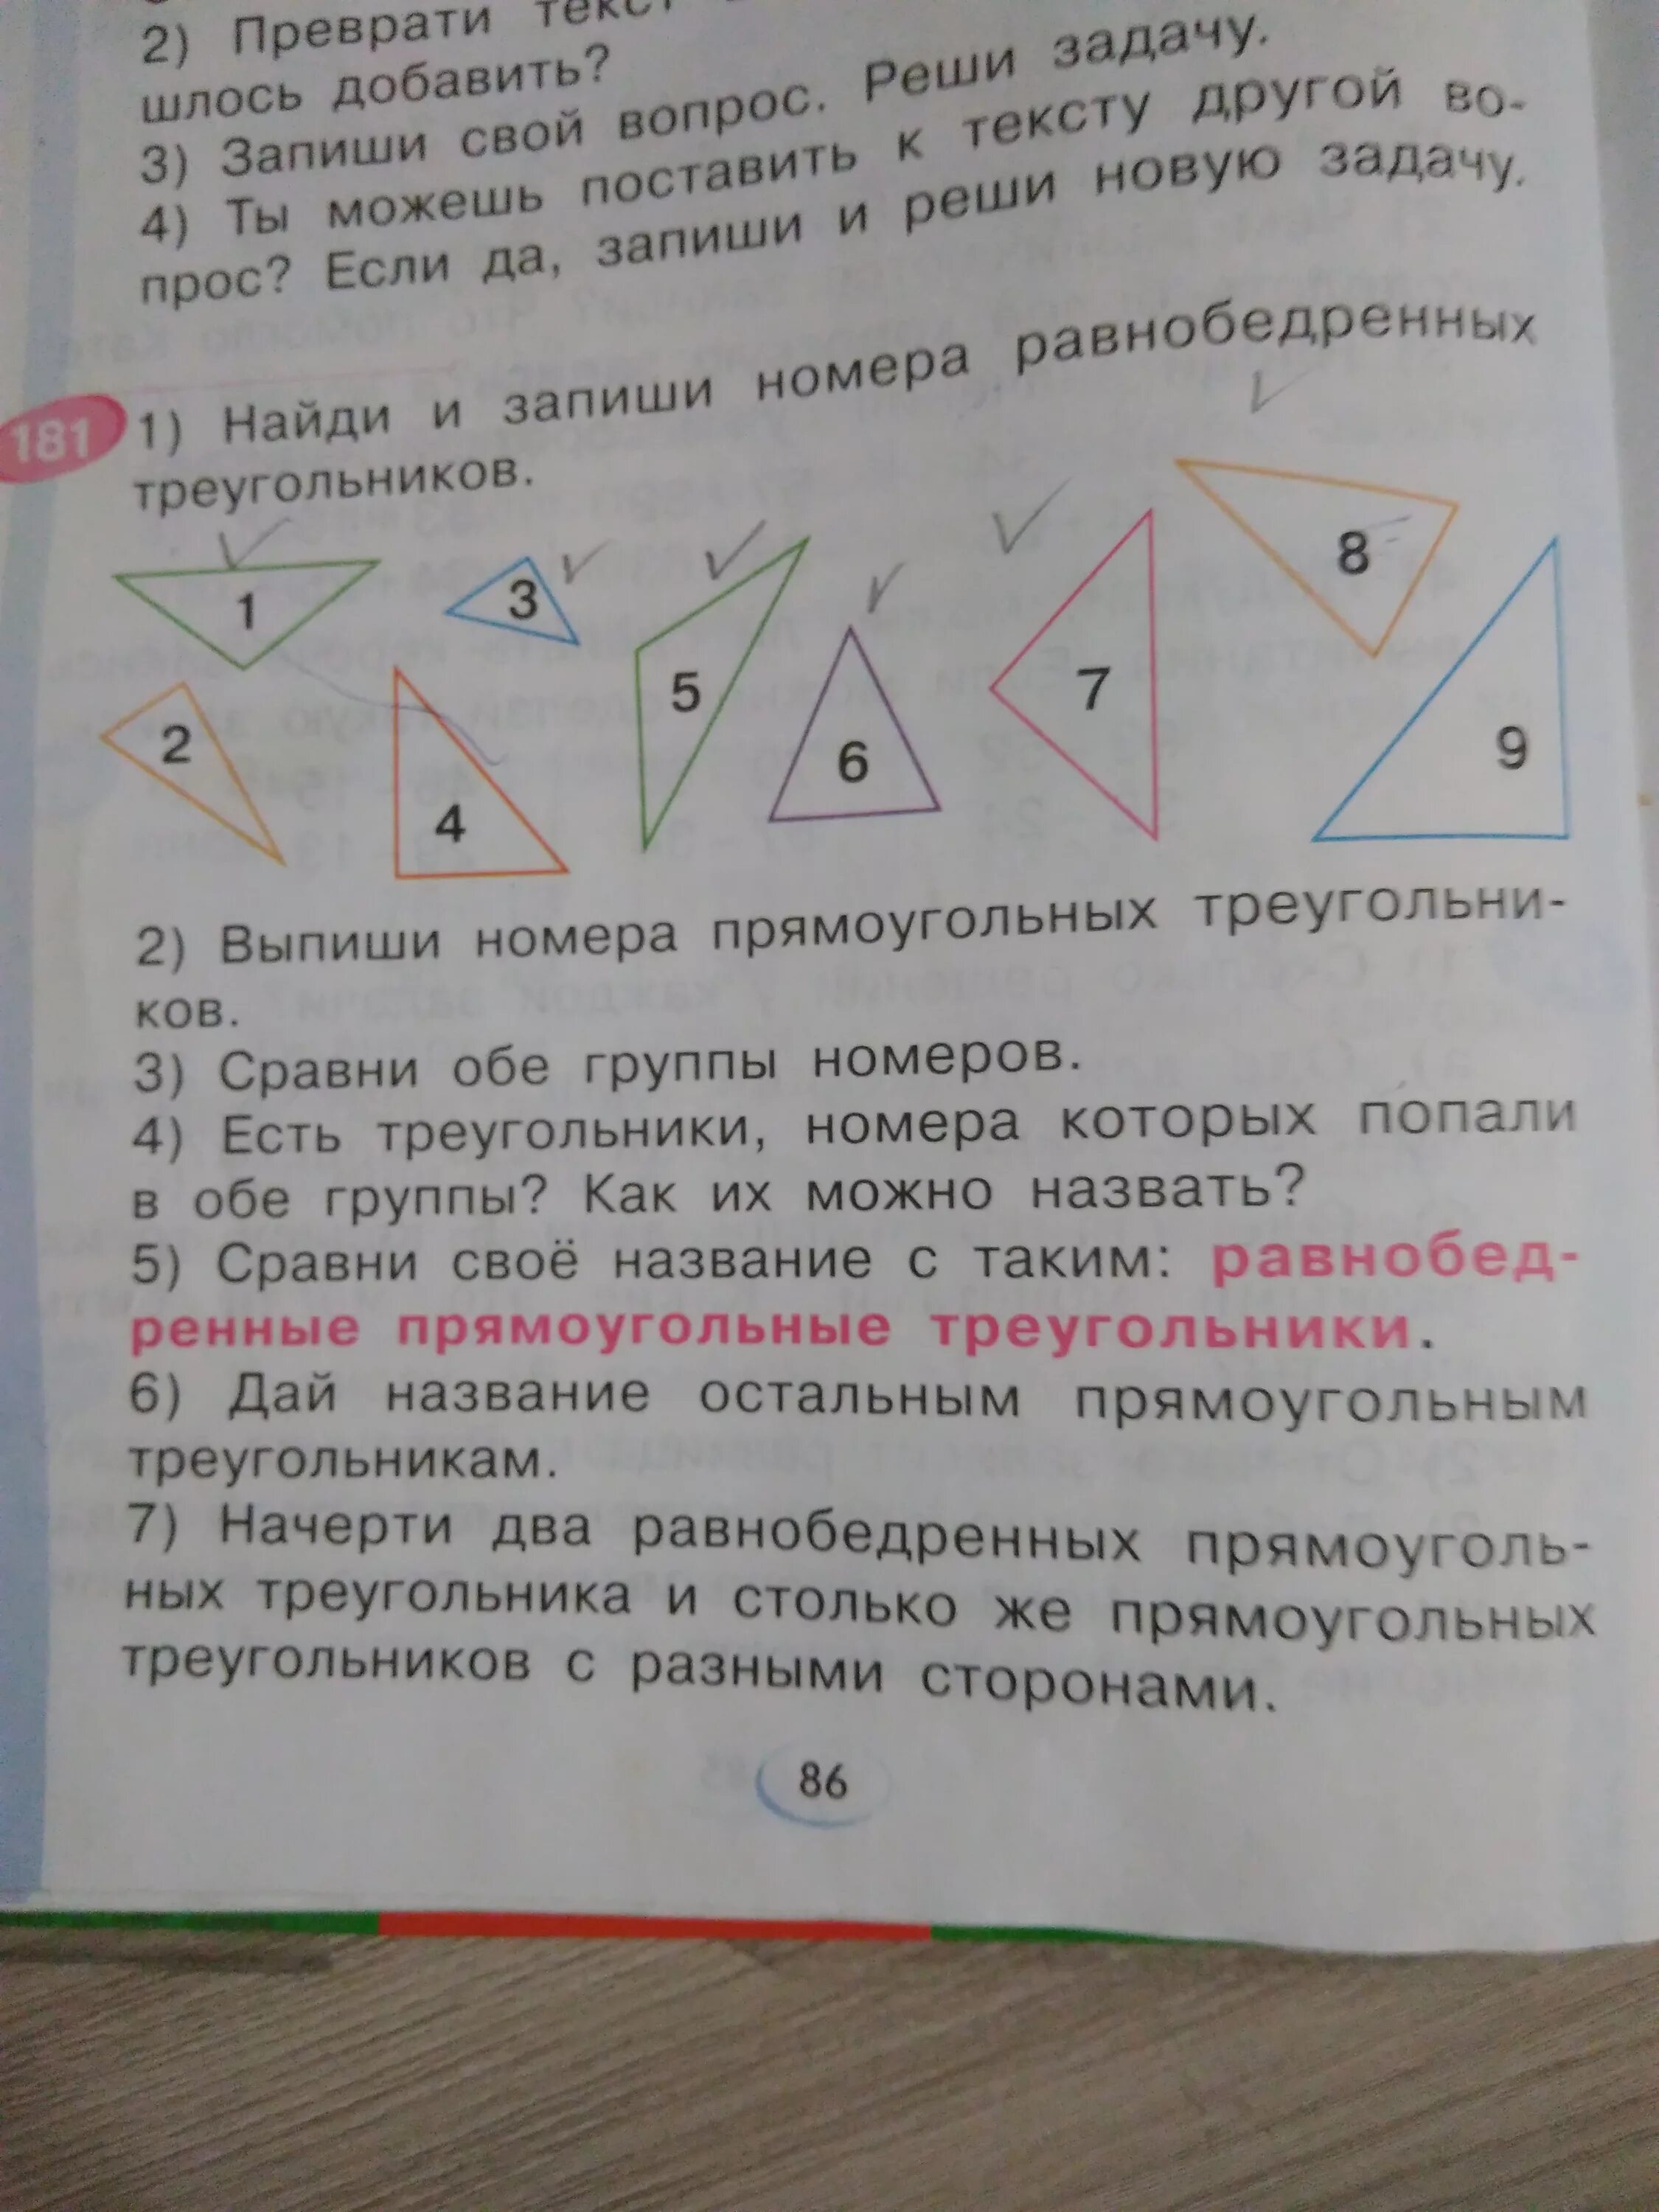 Найди и запиши номера равнобедренных треугольников. Запиши номер треугольника.. Запиши номера всех треугольников. Выпиши номера равнобедренных треугольников. Номера прямоугольных треугольников номера.